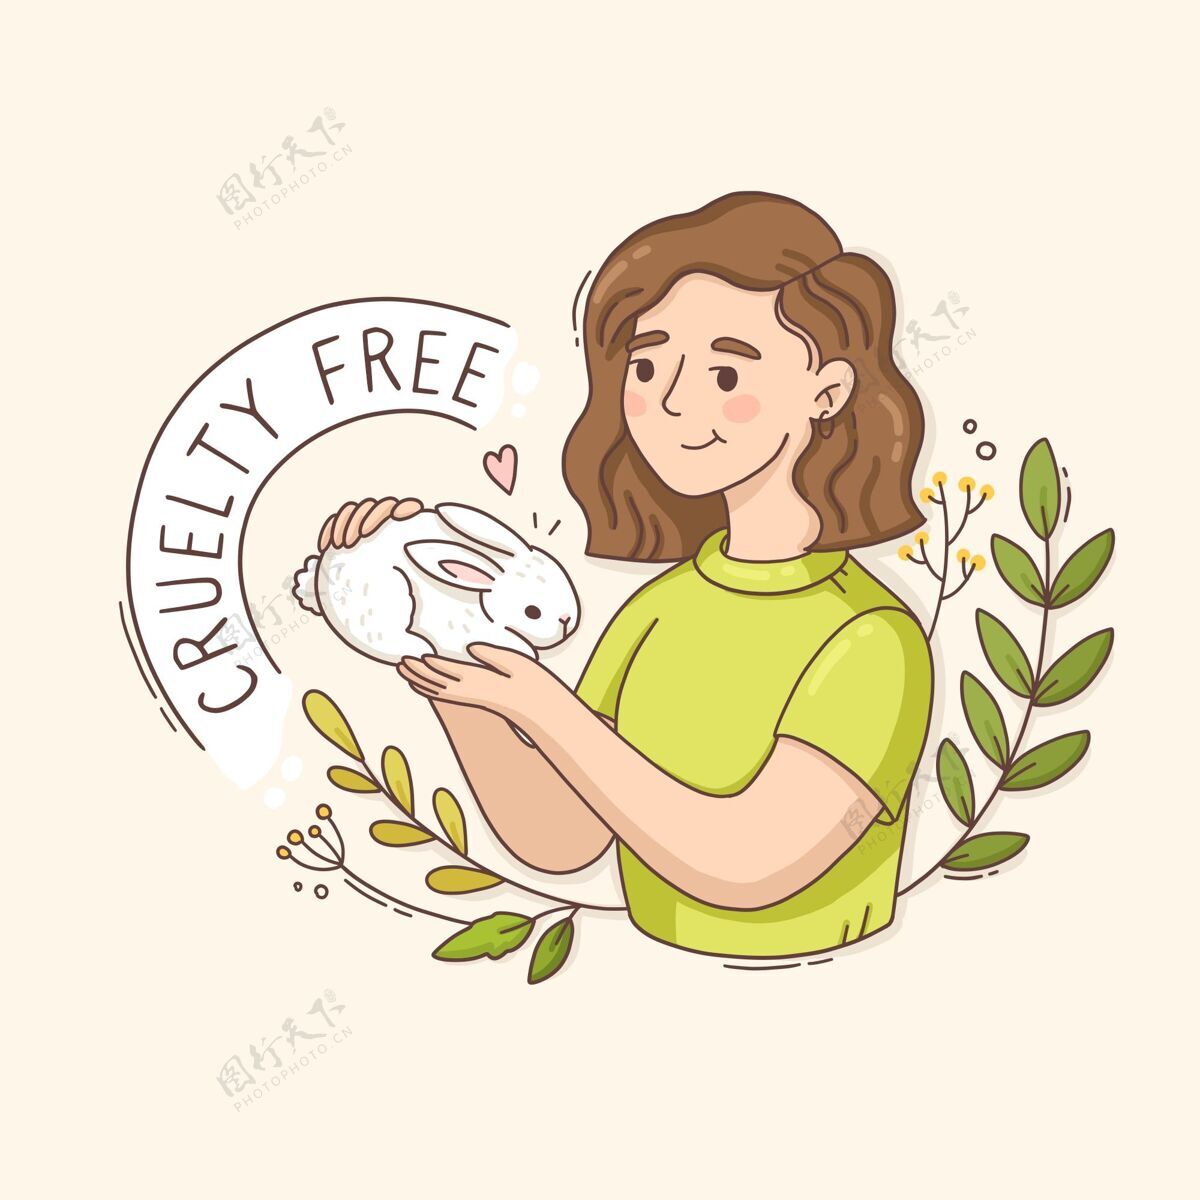 残酷残酷自由的信息与妇女抱着兔子插图免费素食插图